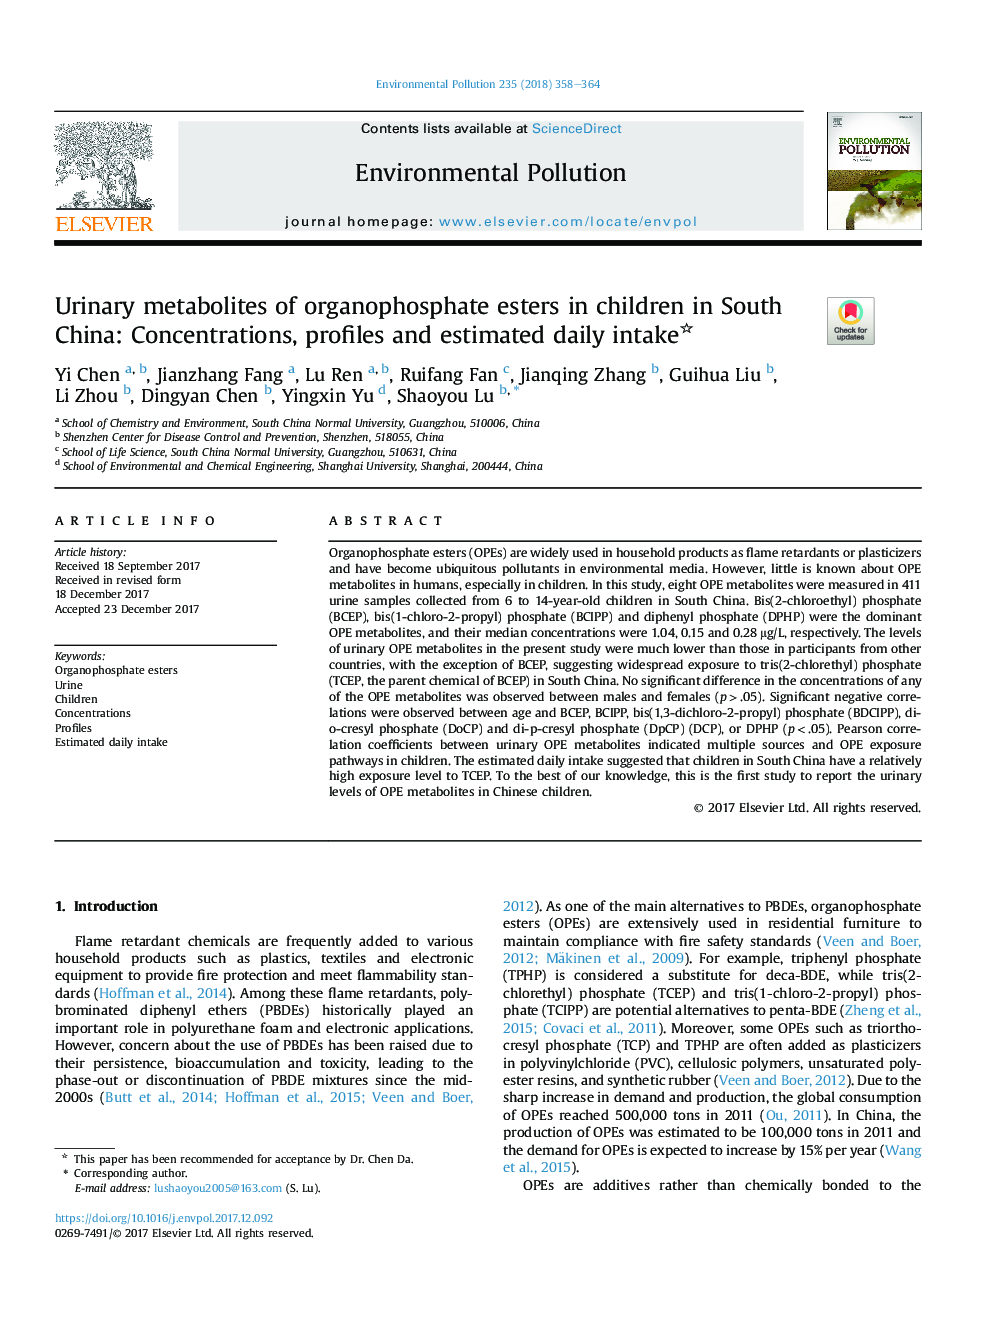 متابولیت های ادرار از اسیدهای ارگانوفسفره در کودکان جنوب چین: غلظت، پروتئین و تخمین مصرف روزانه 